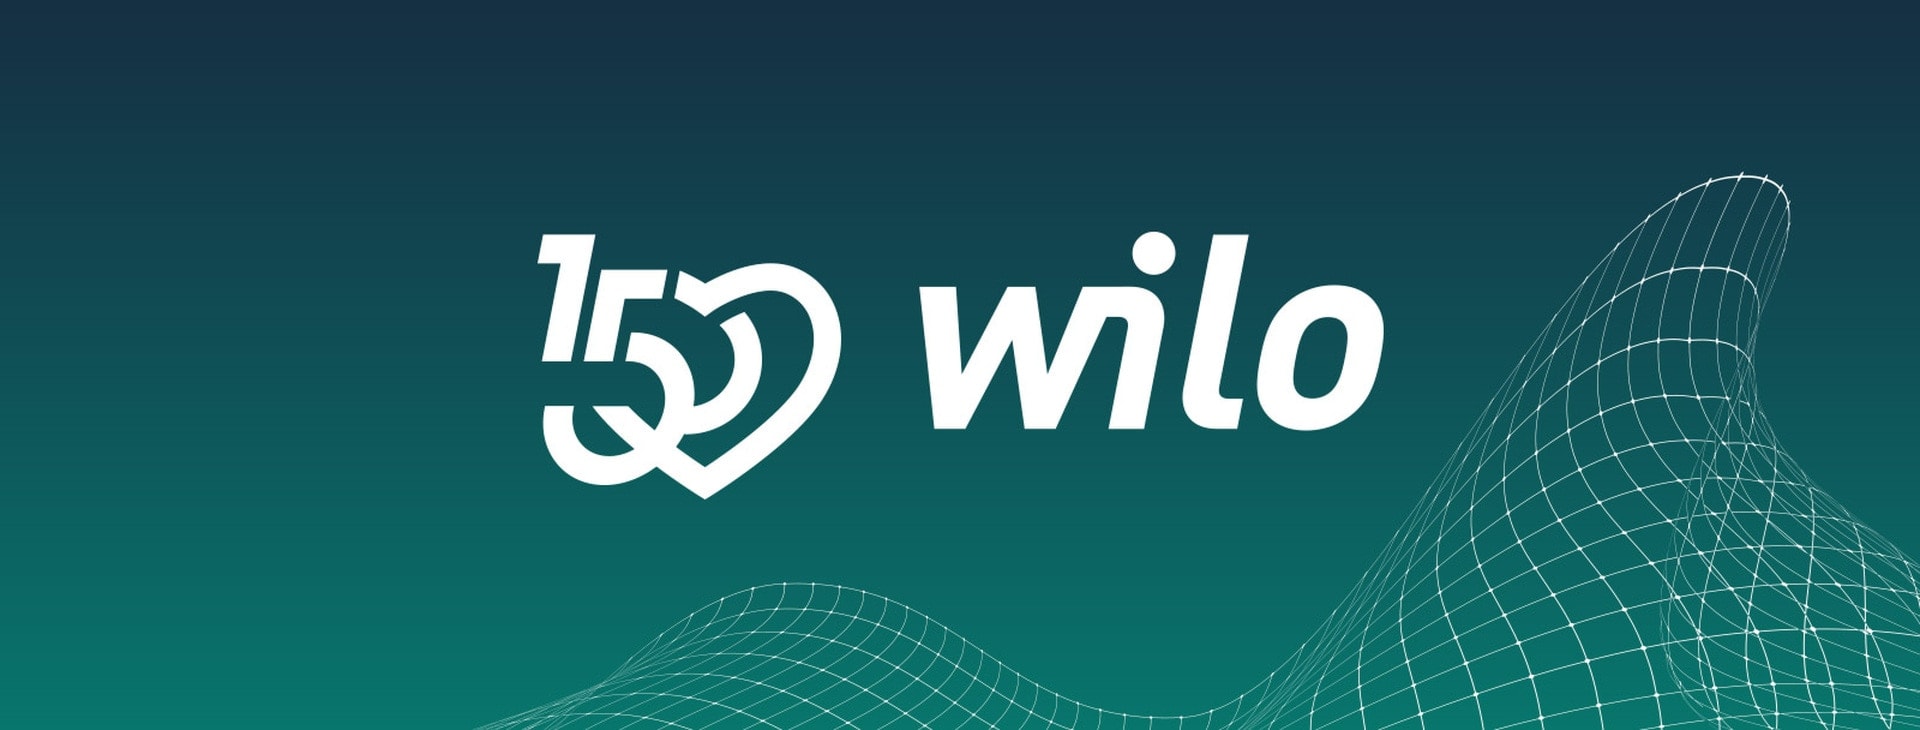 150 years Wilo website banner